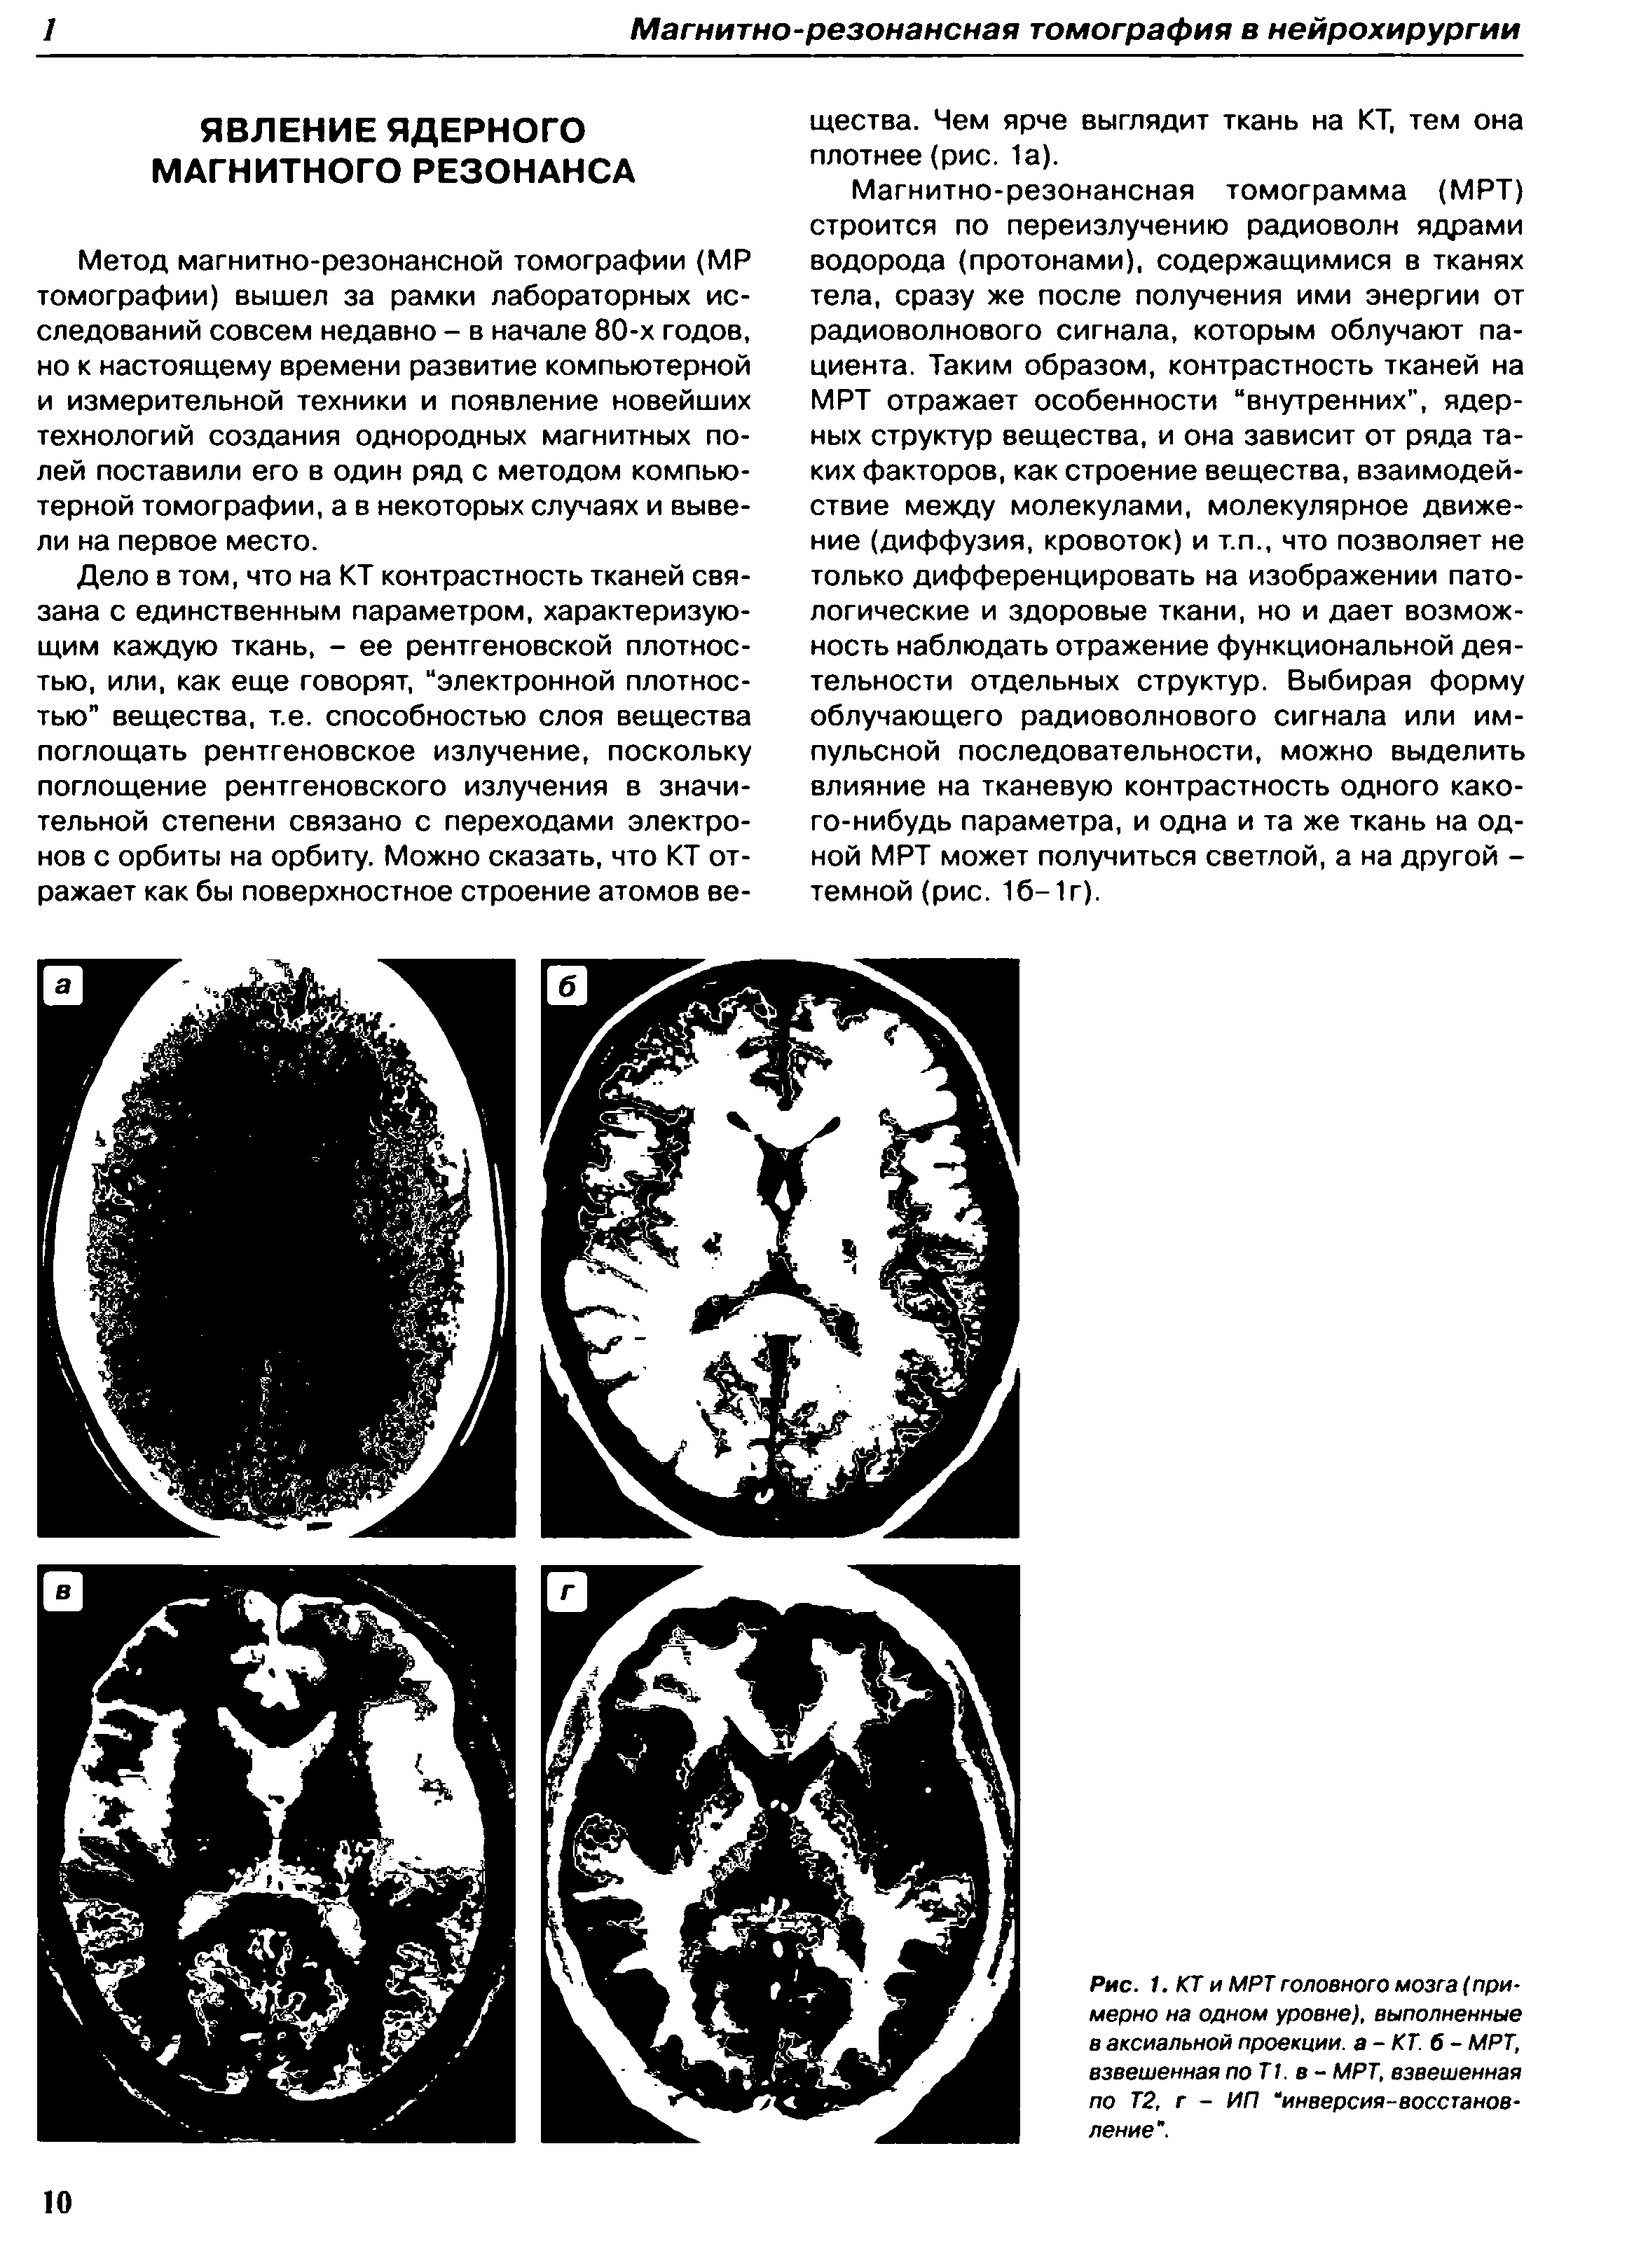 Рис. 1. КТ и МРТ головного мозга (примерно на одном уровне), выполненные в аксиальной проекции, а-КТ. б- МРТ, взвешенная поТ1. в - МРТ, взвешенная по Т2, г - ИП инверсия-восстановление".